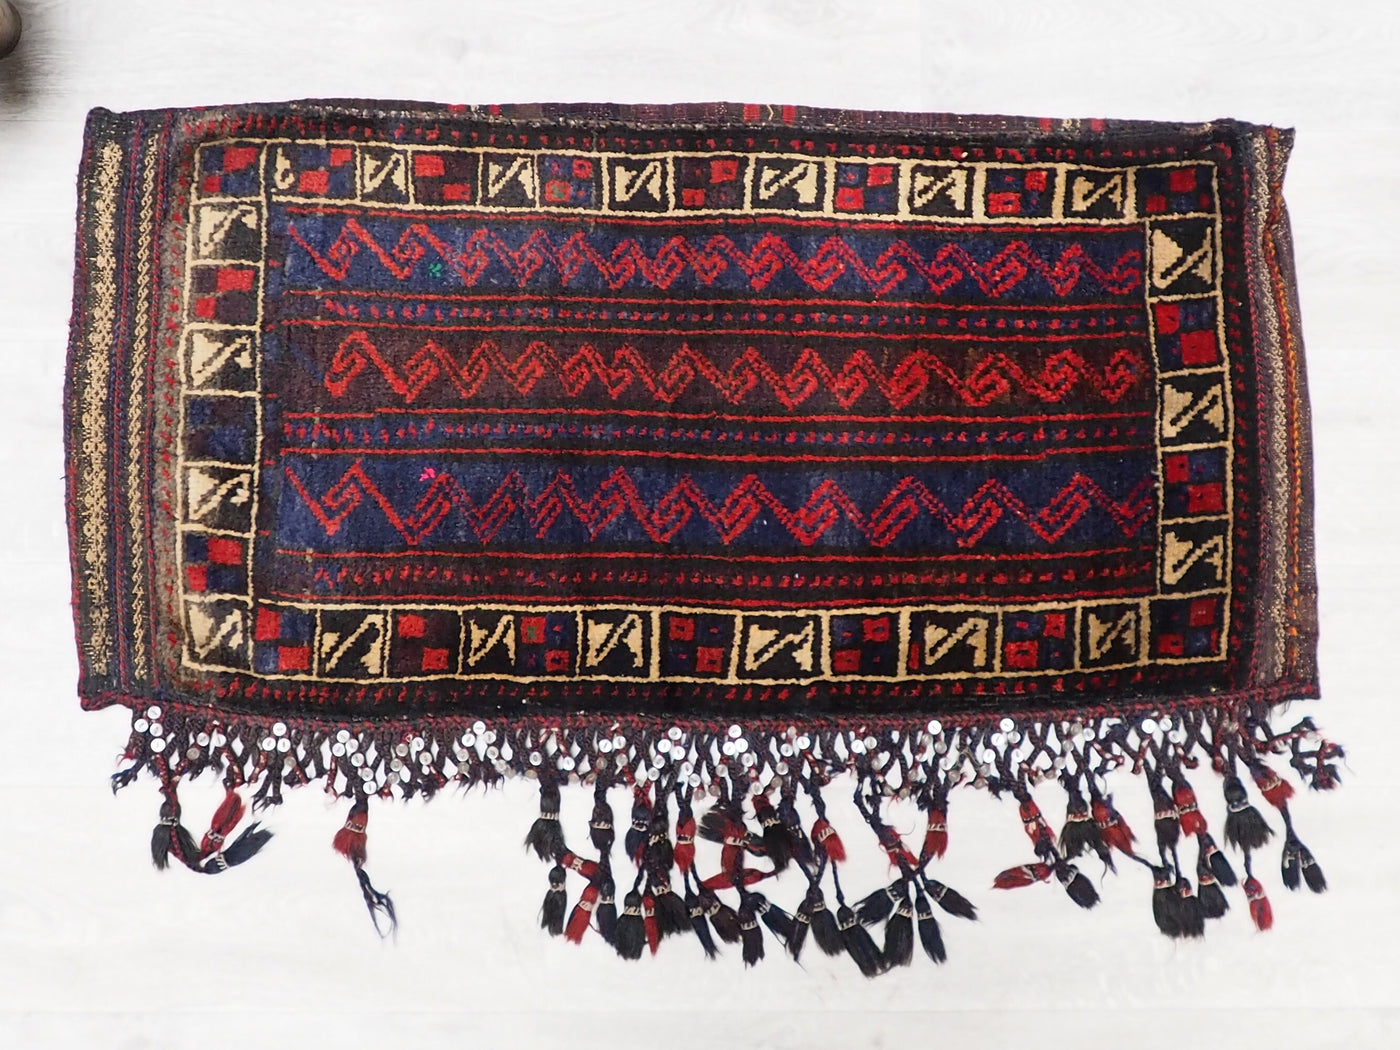 112x54 cm antik orient Afghan belochi Teppich nomaden sitzkissen bodenkissen  Bohemian cushion 1001-nacht Nr.22/1  Orientsbazar   